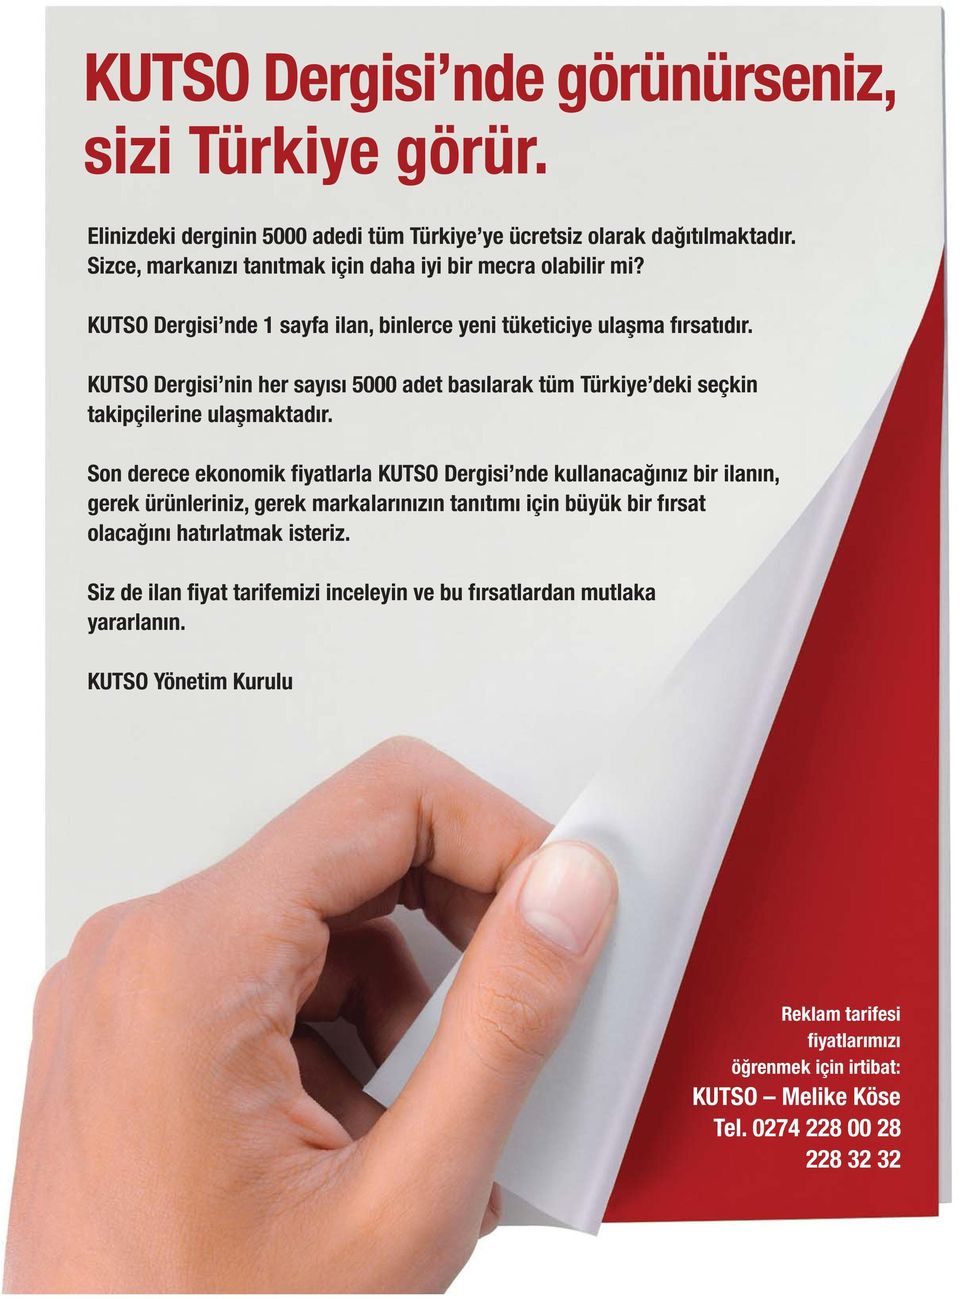 KUTSO Dergisi nin her sayýsý 5000 adet basýlarak tüm Türkiye deki seçkin takipçilerine ulaþmaktadýr.